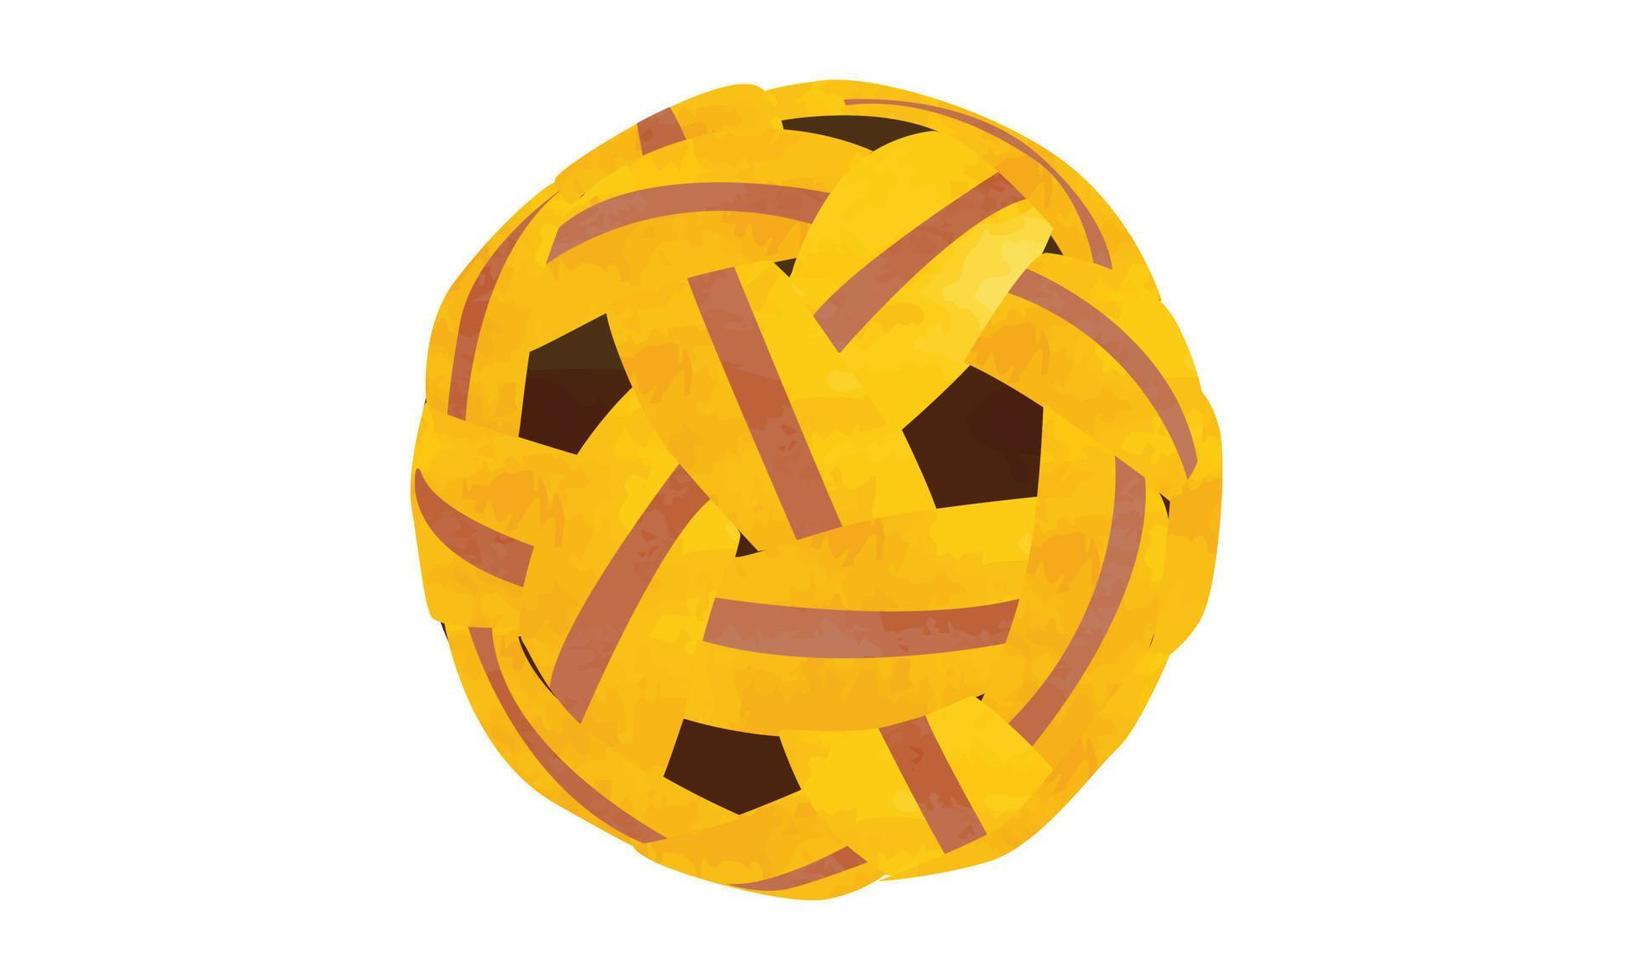 Sepak Takraw-Ball-Clipart. einfache Sepak-Takraw-Ballaquarellart-Vektorillustration lokalisiert auf weißem Hintergrund. Sepak Takraw Ball Cartoon-Stil handgezeichnet. minimalistische sepak takraw symbolzeichnung vektor